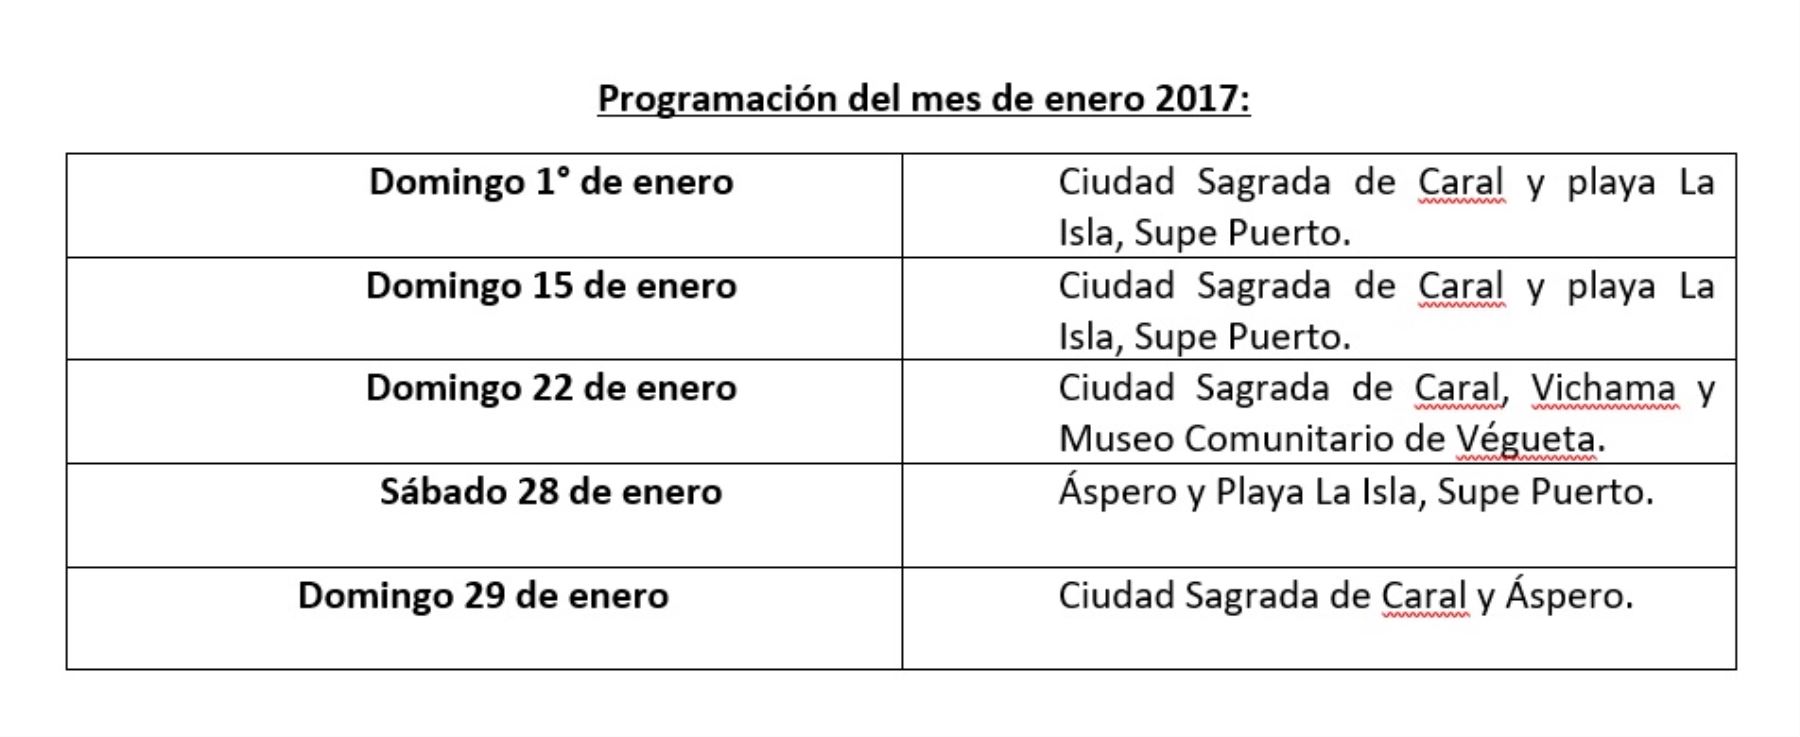 Cronograma de visitas a la Ciudad Sagrada de Caral en enero del 2017.